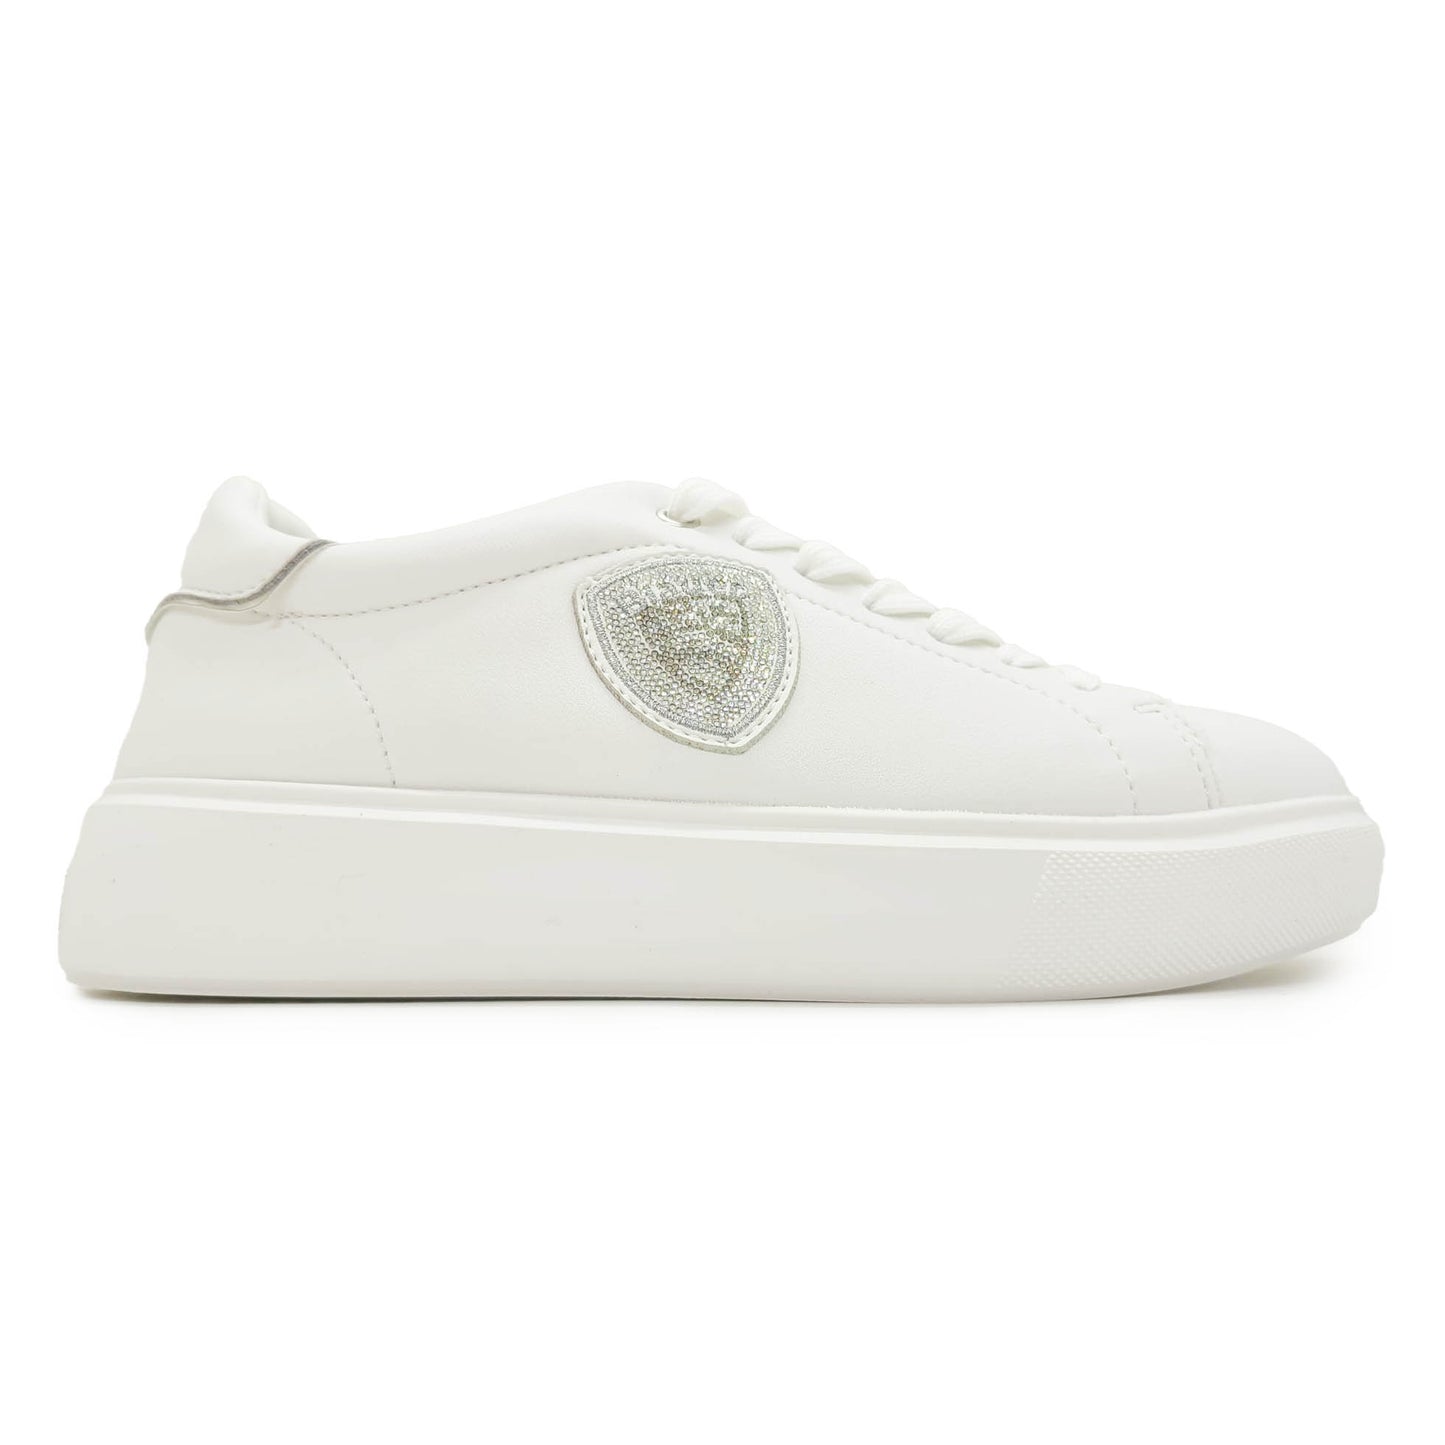 Blauer sneakers in pelle bianca con logo brillantini fondo gomma